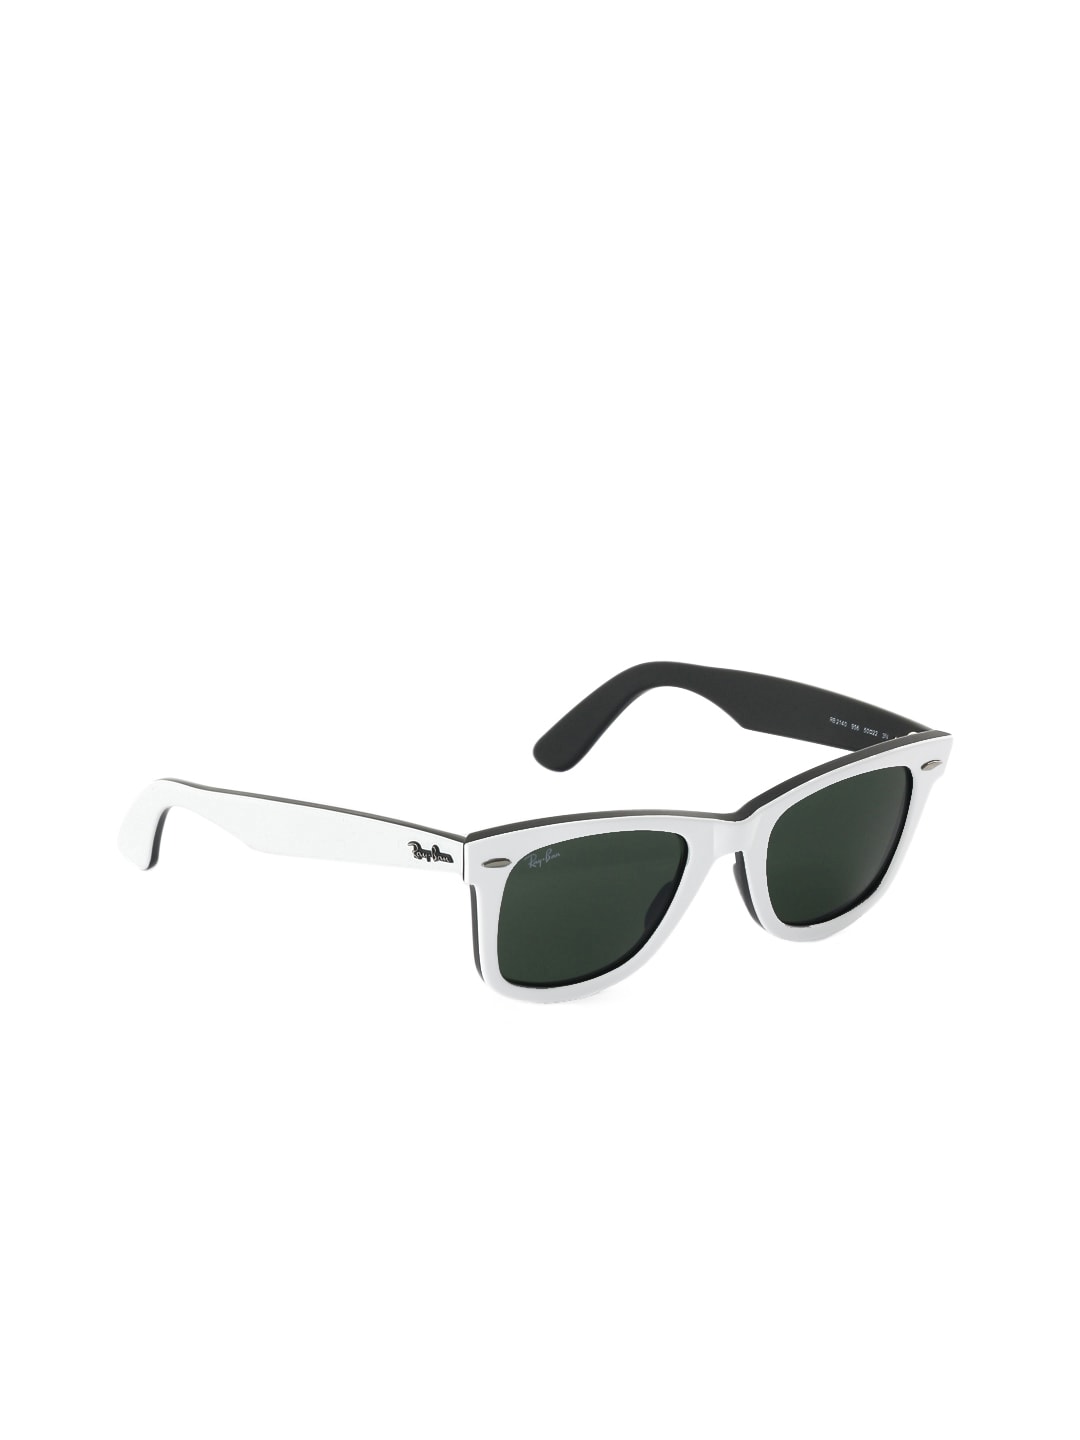 Ray-Ban Men Wayfarer White Sunglasses